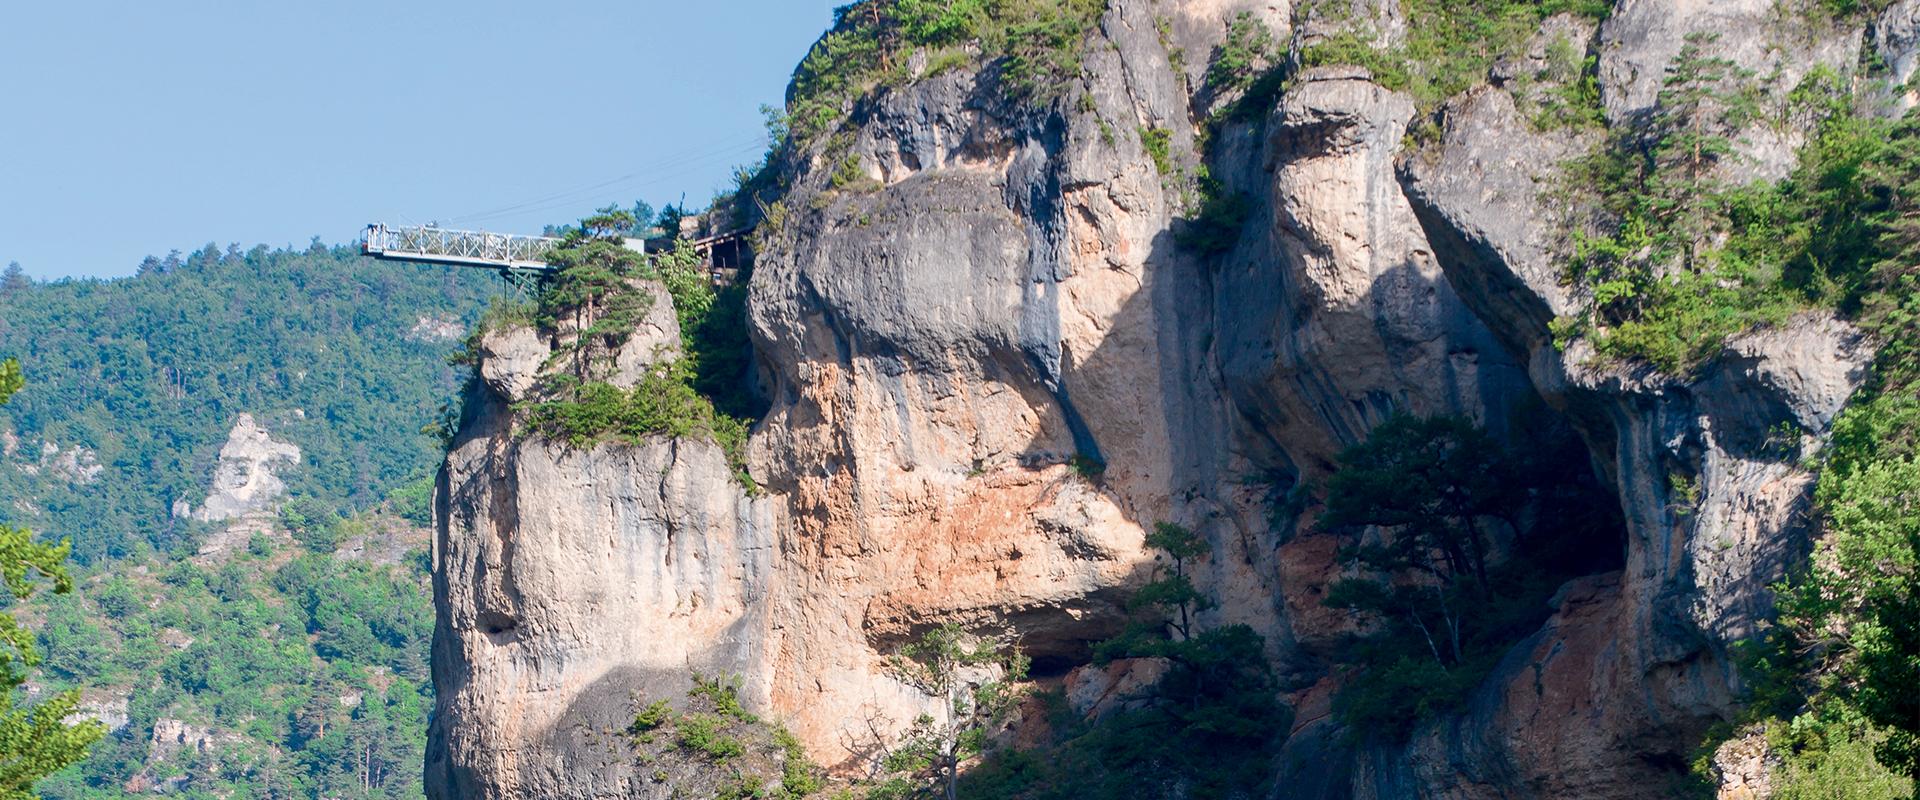 Un saut à l'élastique unique dans les Gorges du Tarn | Lozère Tourisme